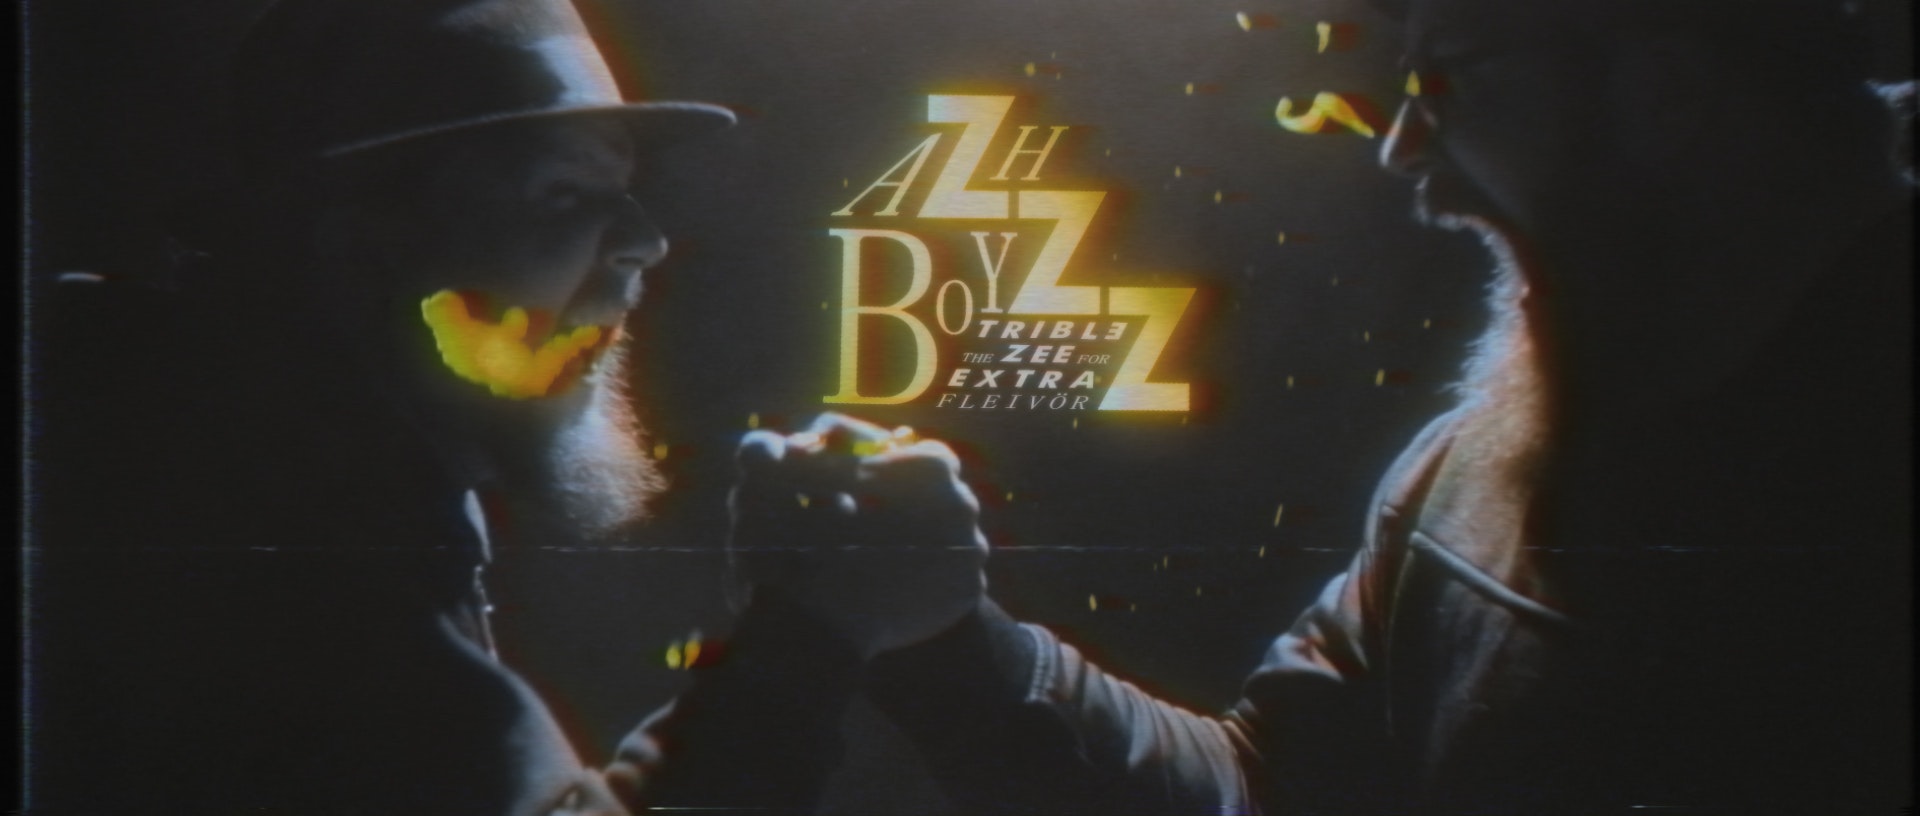 Azh Boyzz logo video. Photo by Azh Boyzz.